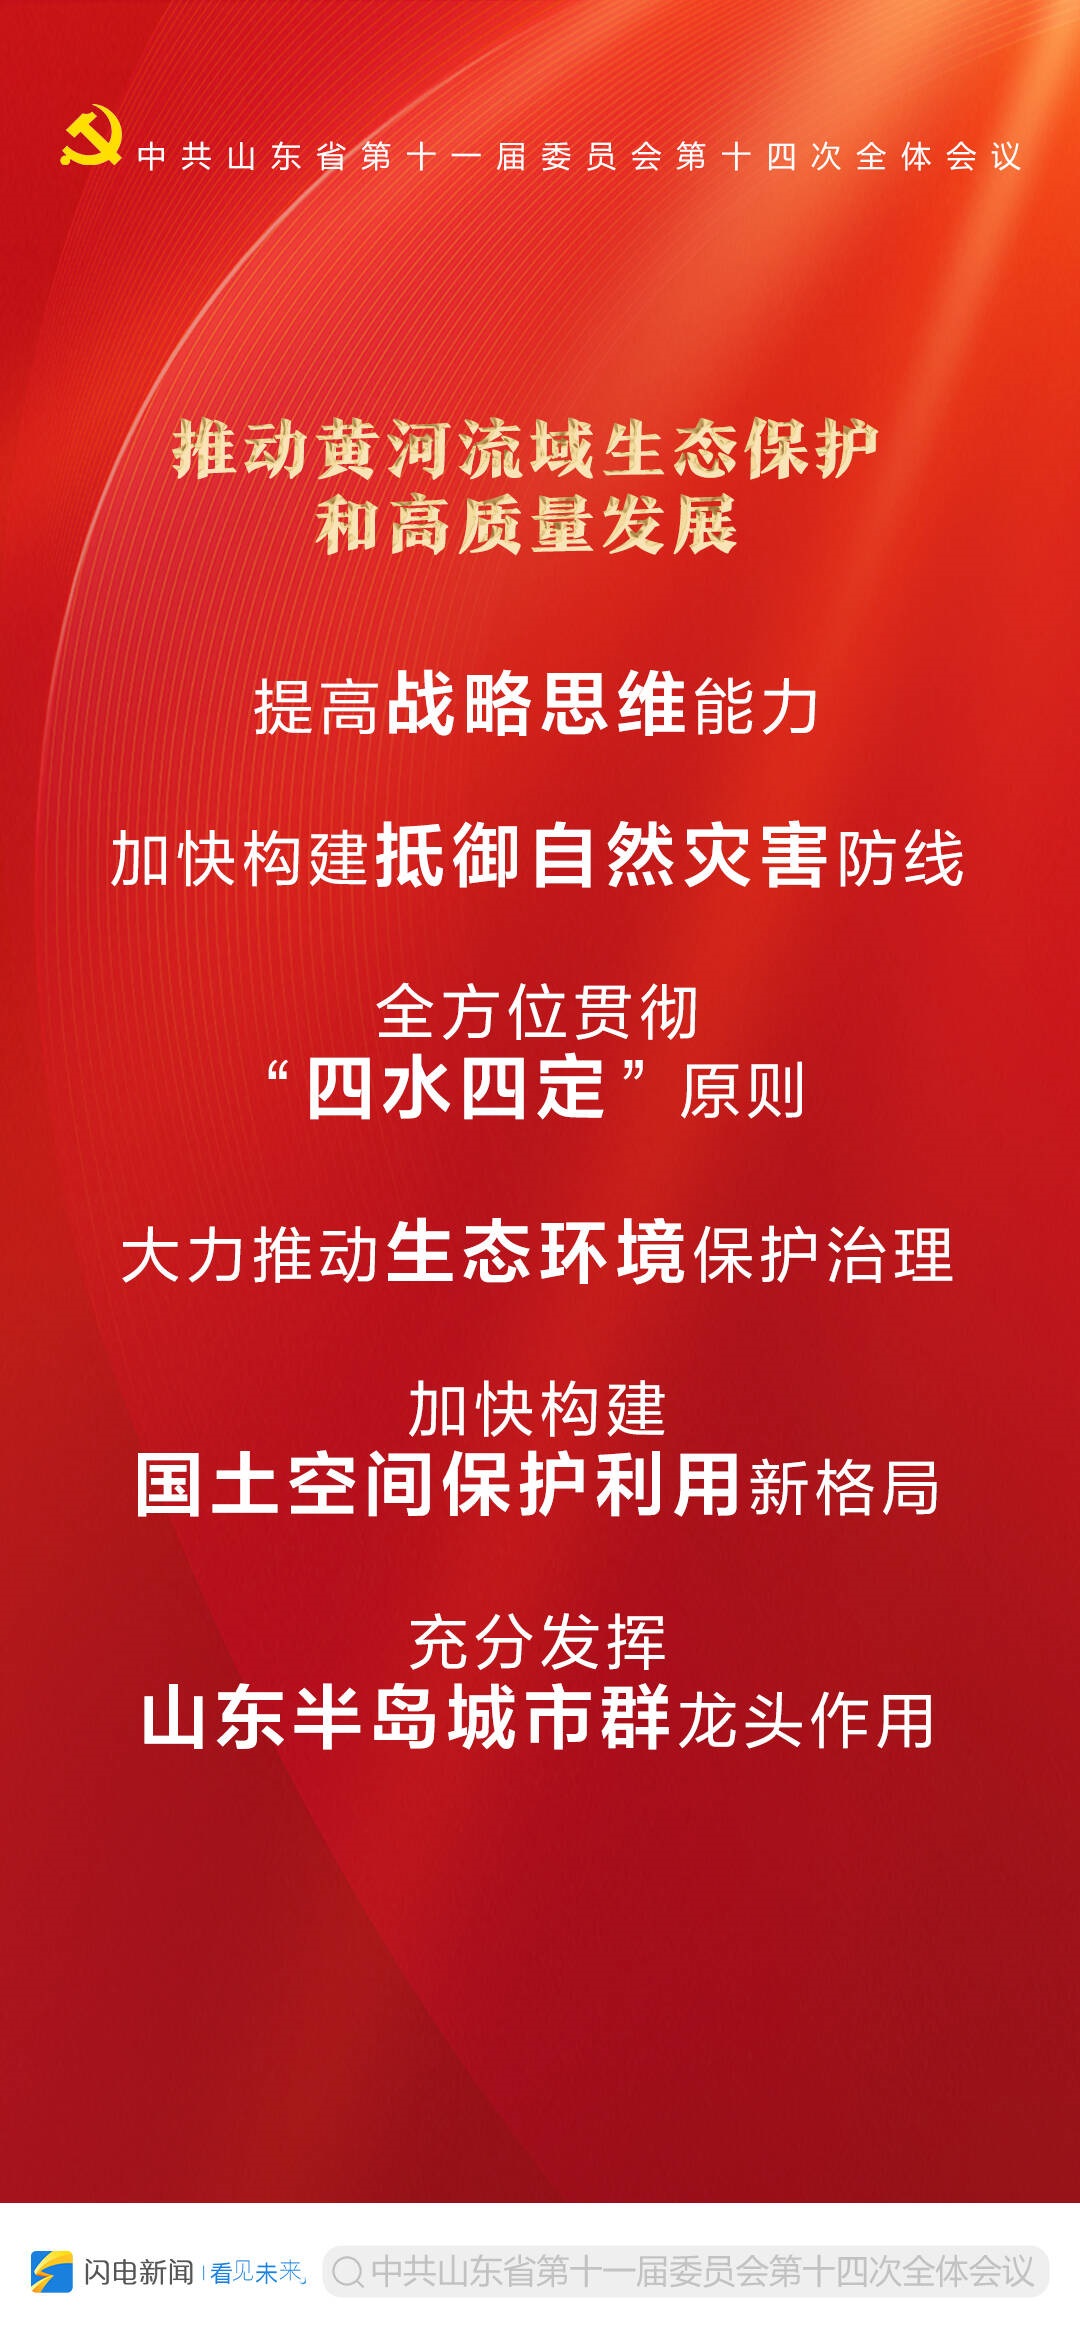 9张海报带你读懂中共山东省委十一届十四次全体会议公报